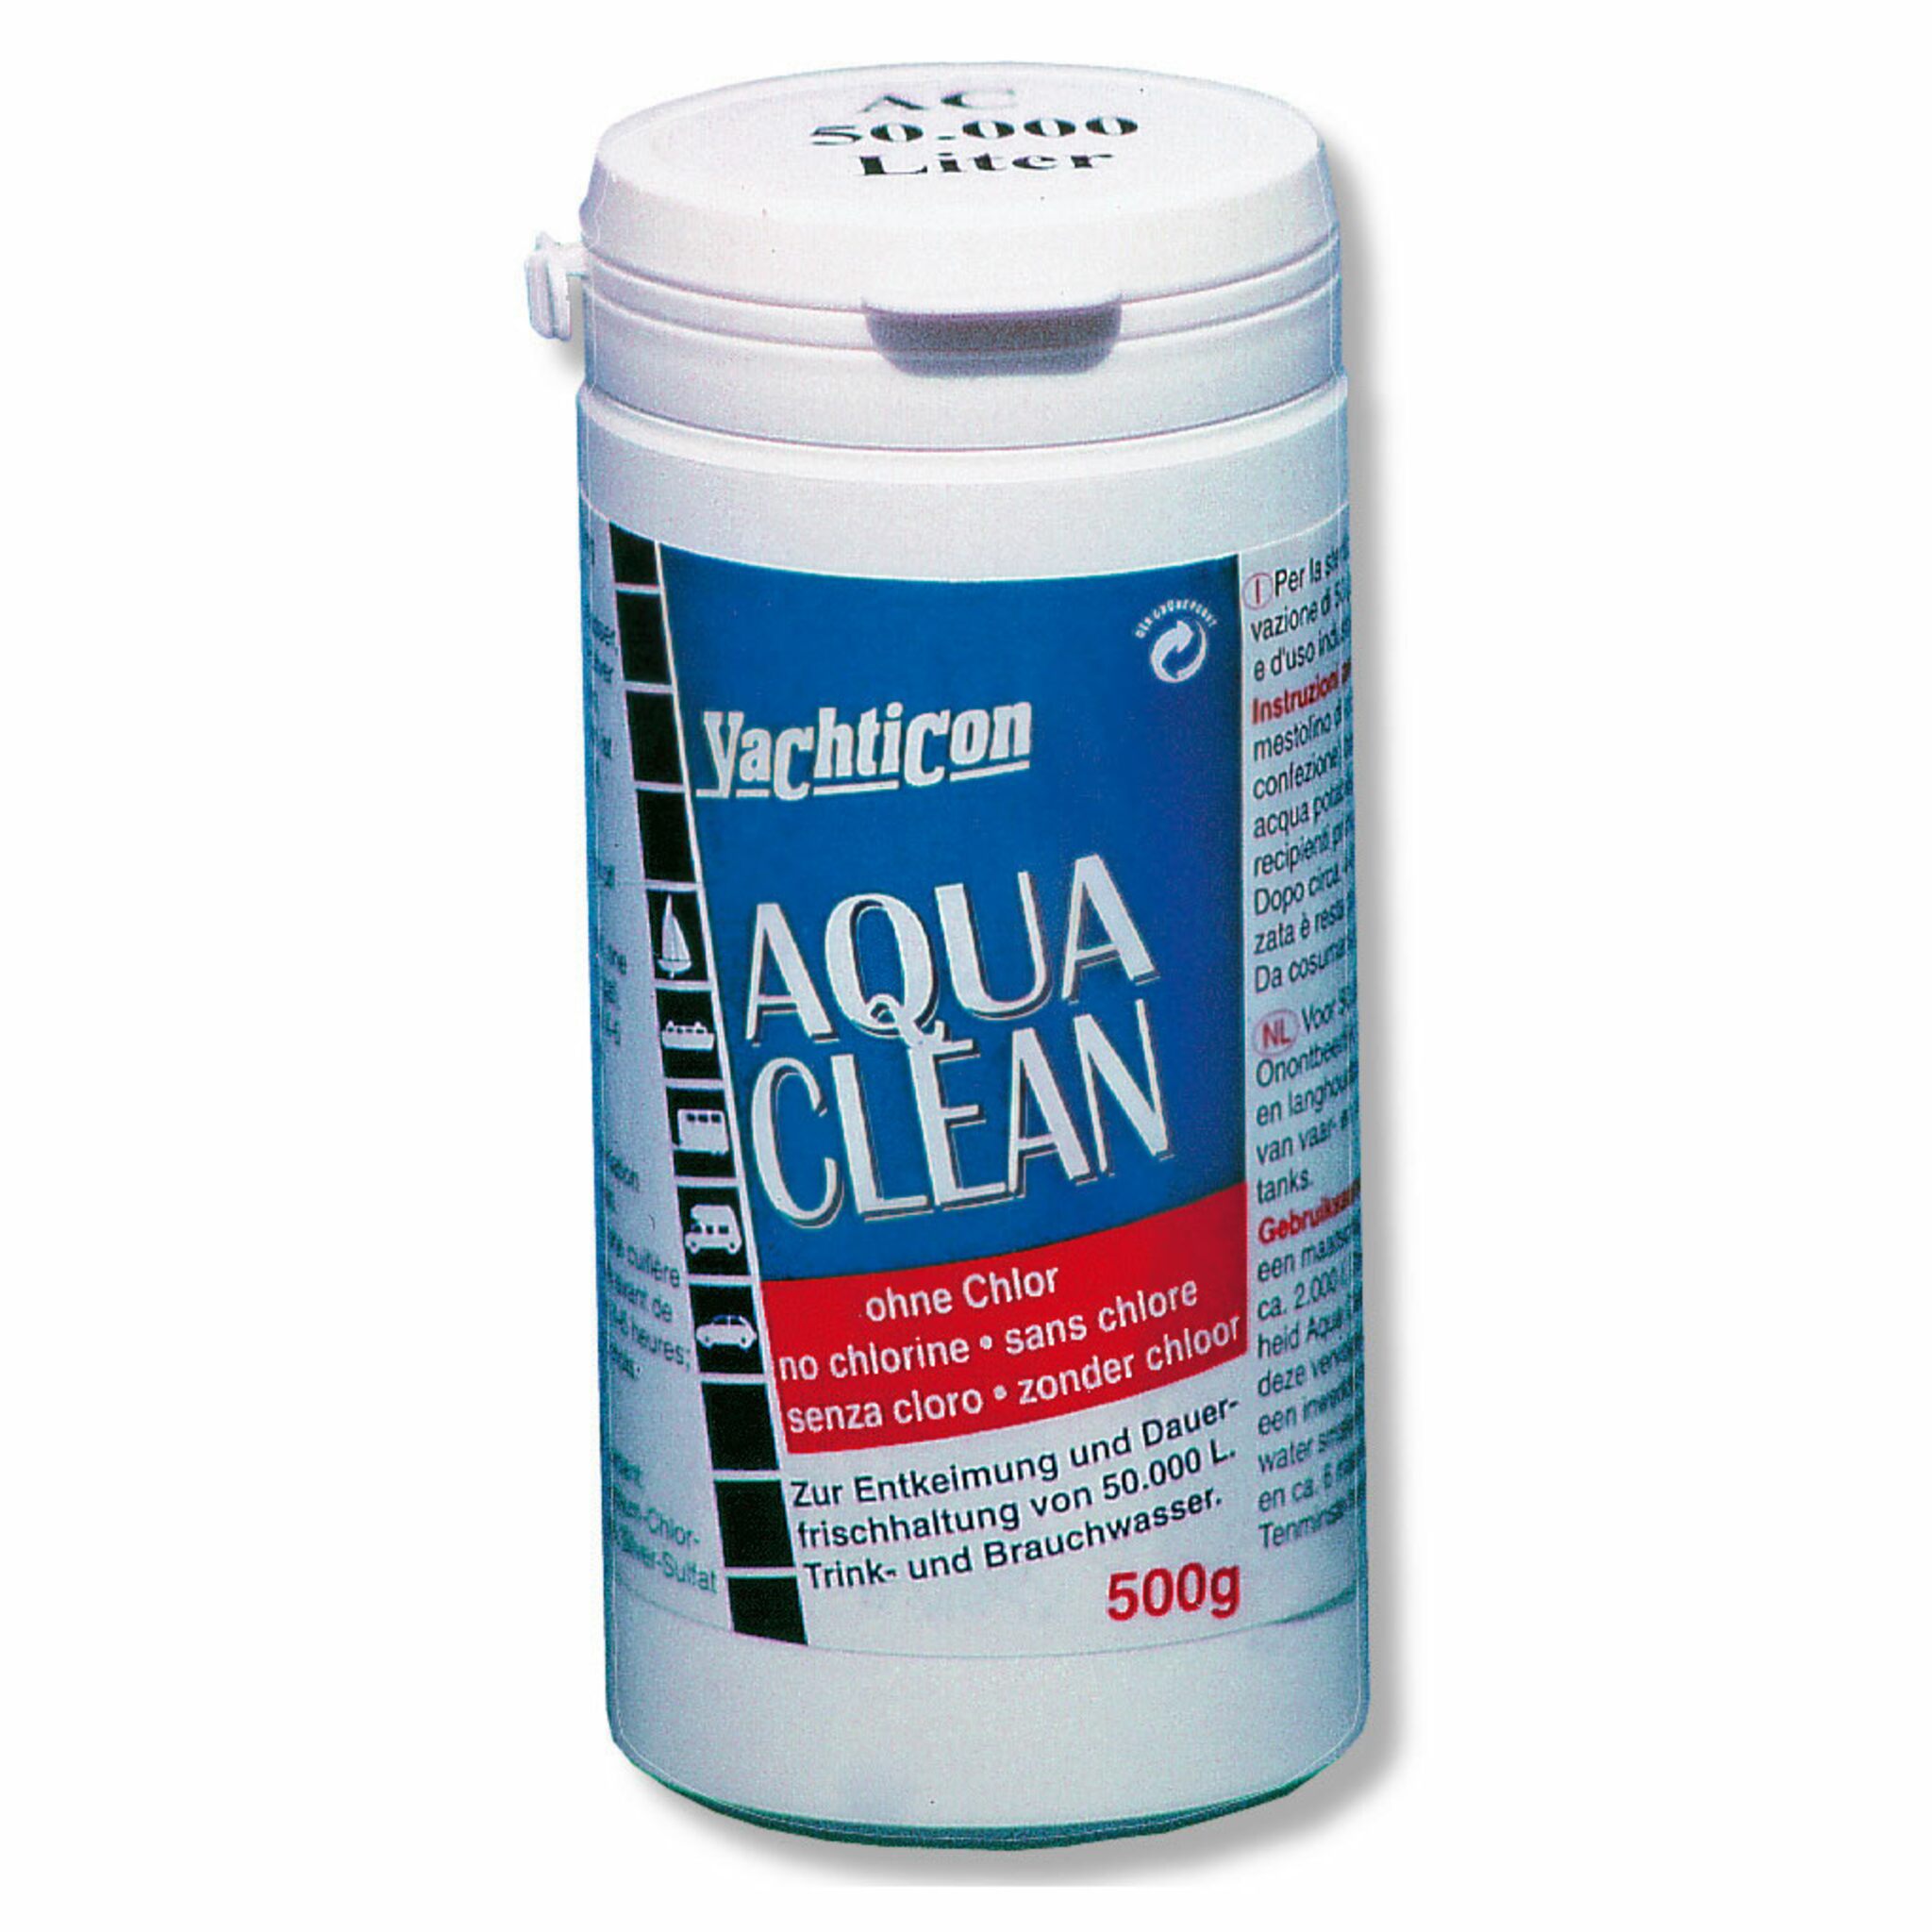 Yachticon Aqua Clean 500 g powder, enough for 50000 l